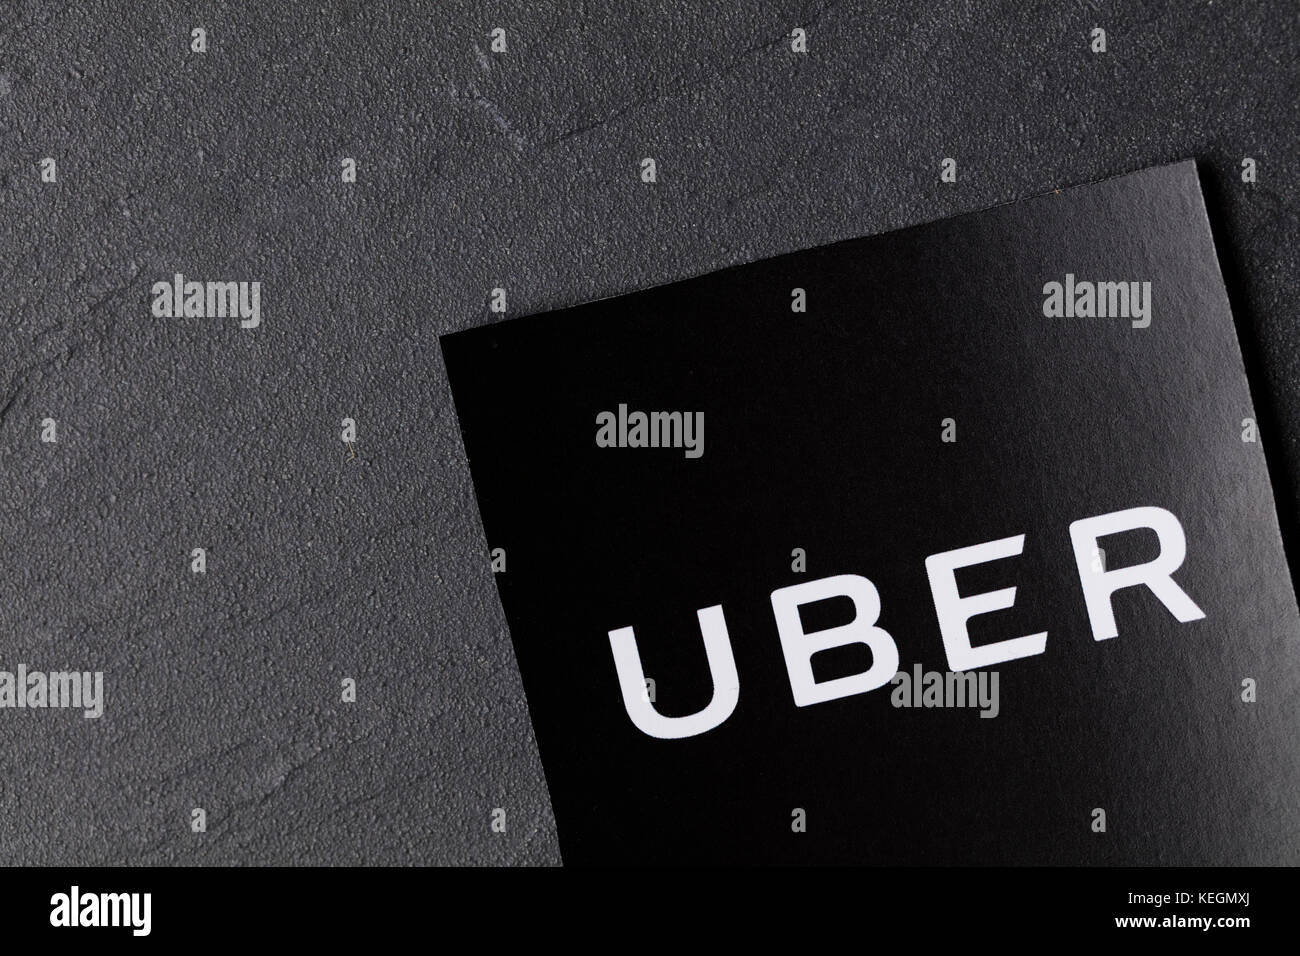 Una fotografía del logotipo. uber uber es una popular aplicación de servicio de transporte estilo taxi, fundada en 2009 Foto de stock